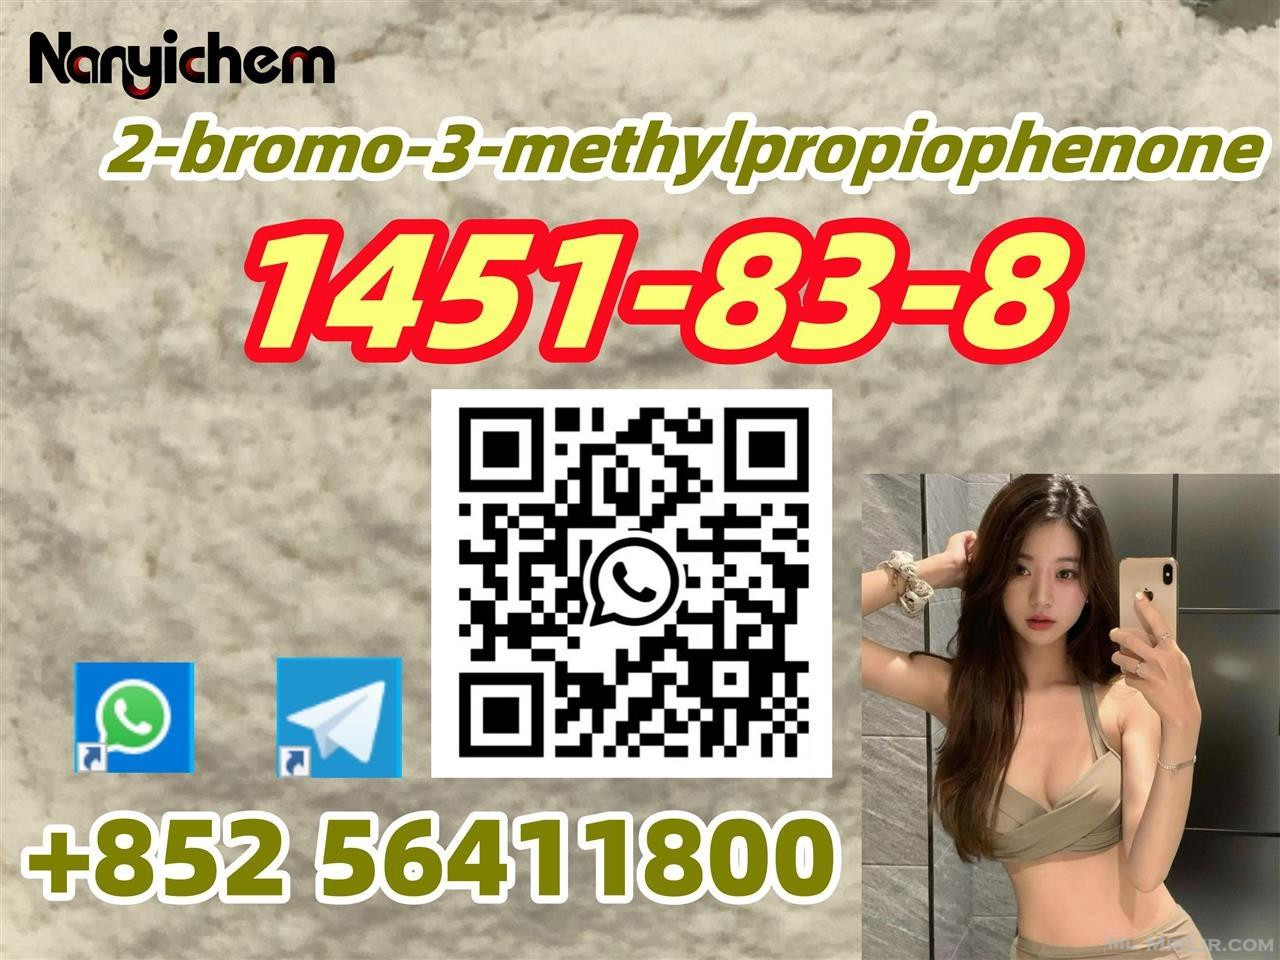 CAS 1451-83-8      2-bromo-3-methylpropiophenone 